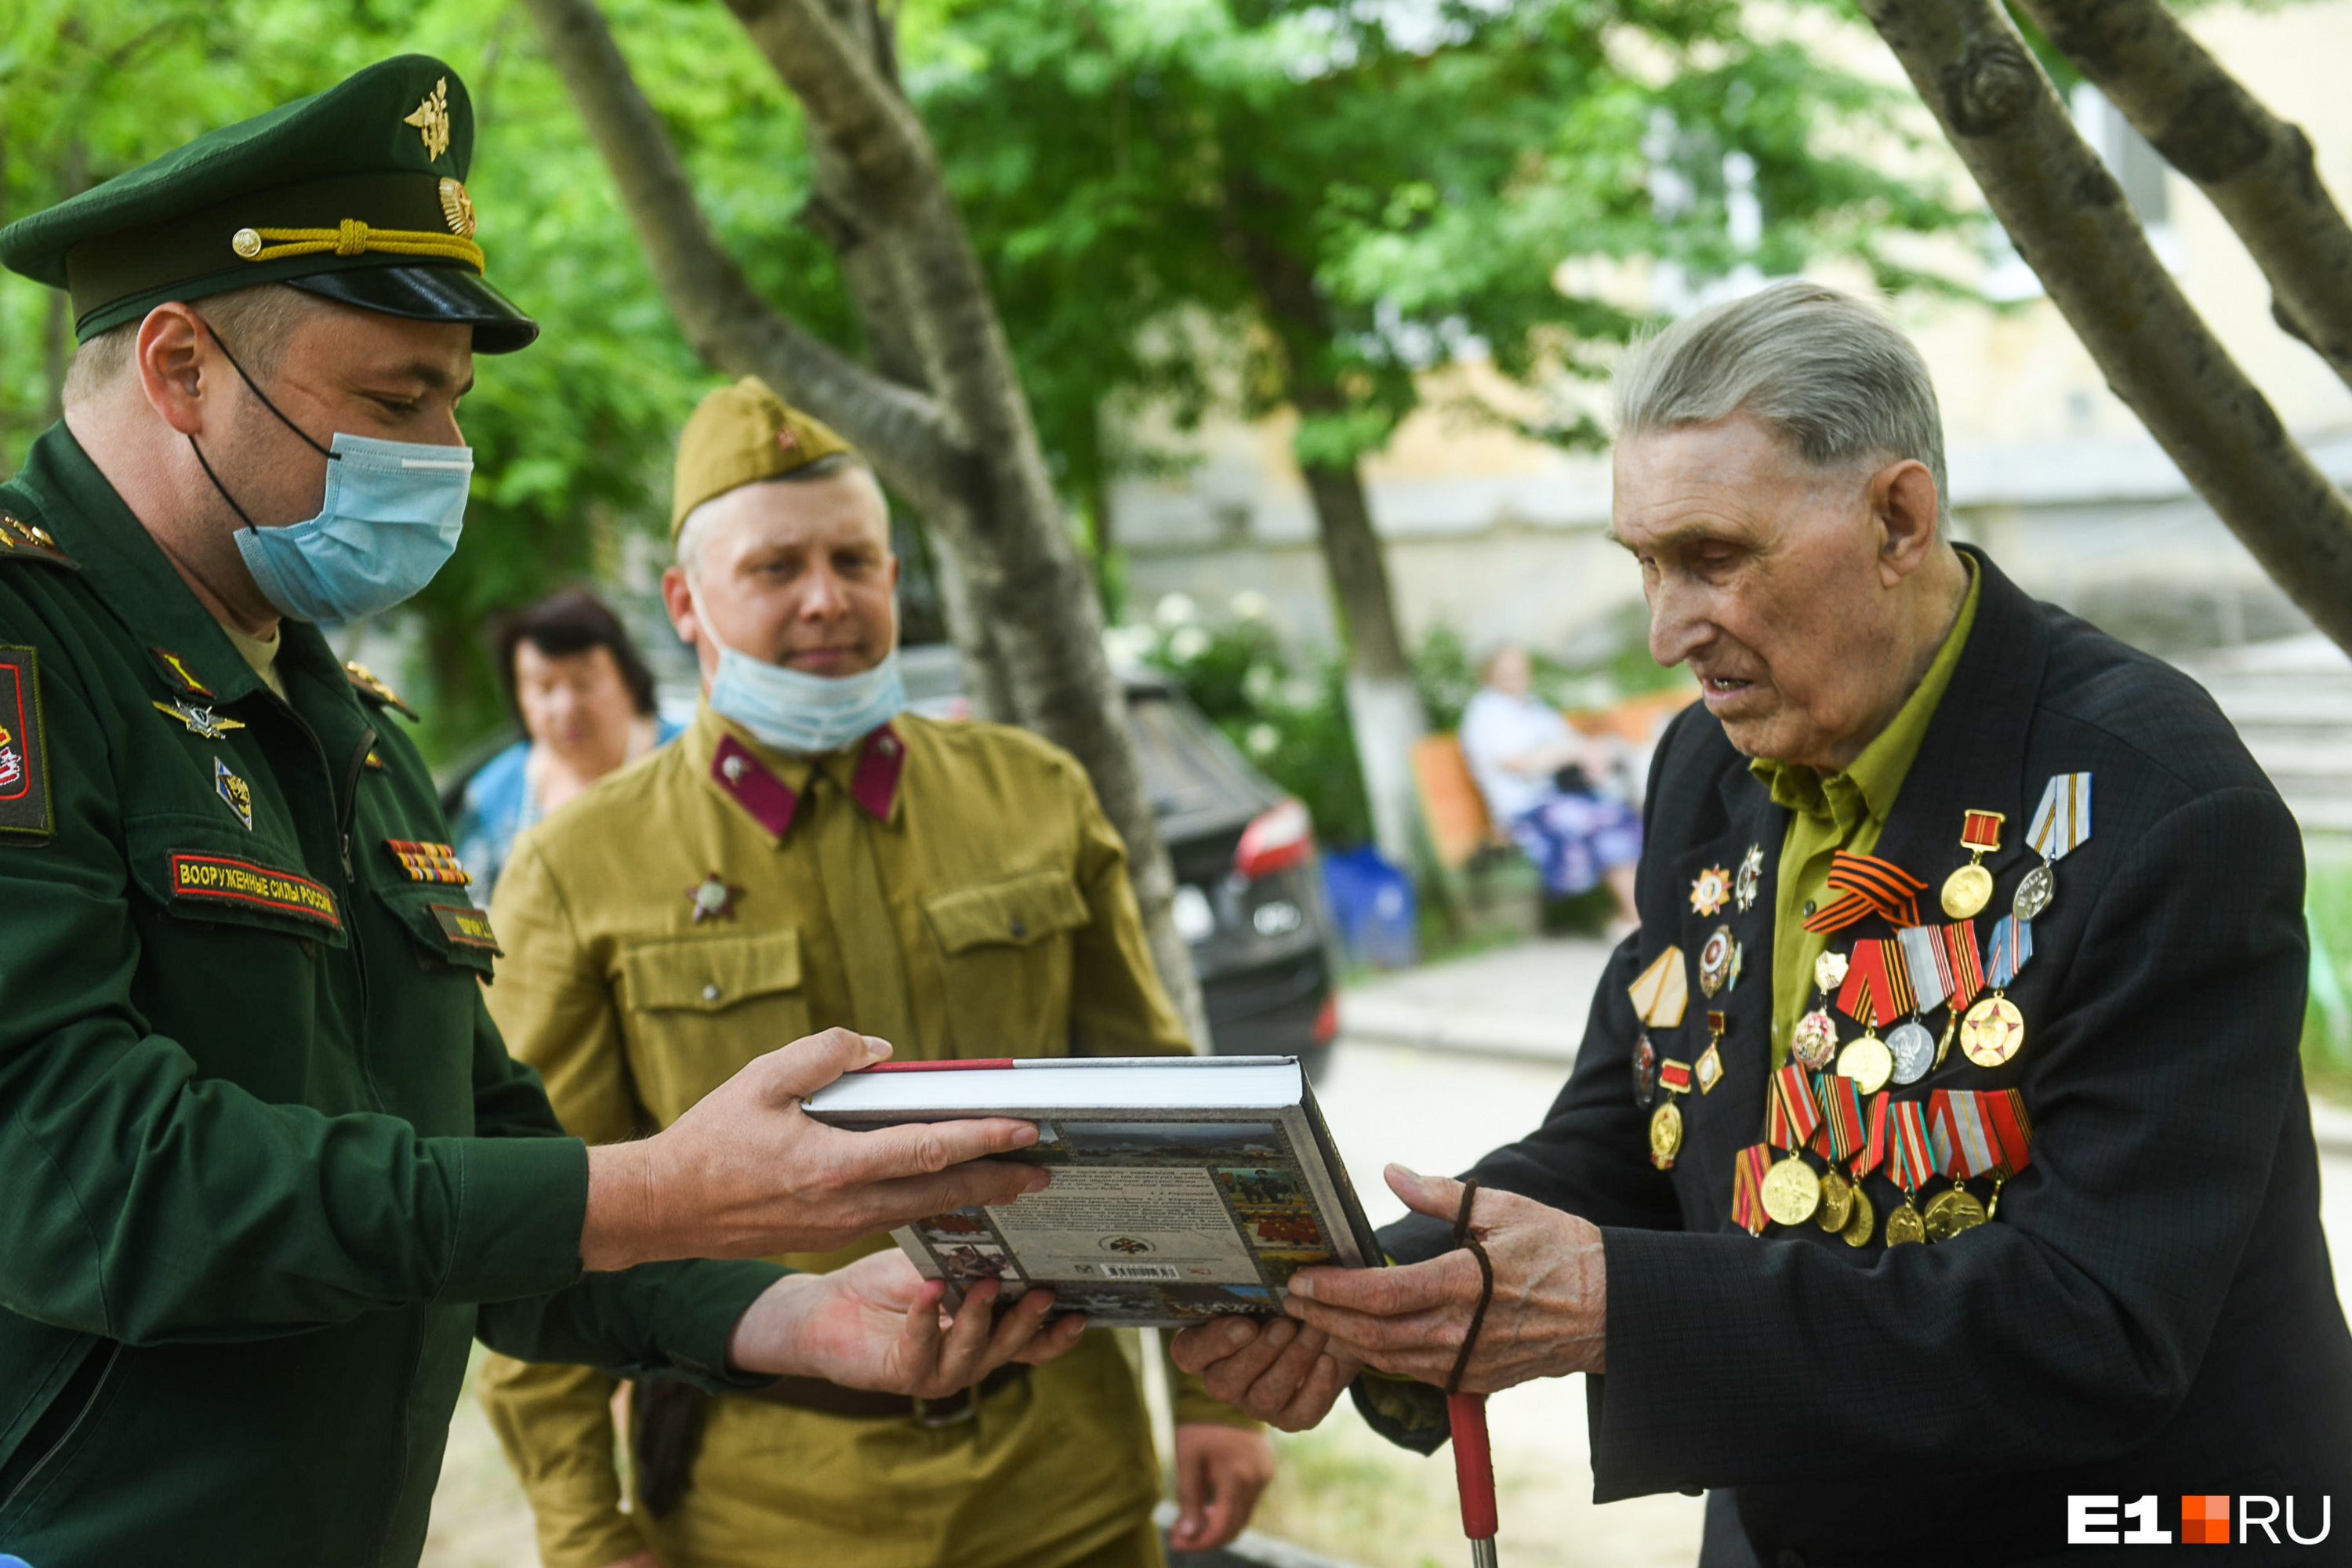 Офицеры ЦВО подарили ветерану книгу об истории русской армии. <br>— Спасибо за ваш подвиг, — сказали они и предложили спеть «Смуглянку» <br>